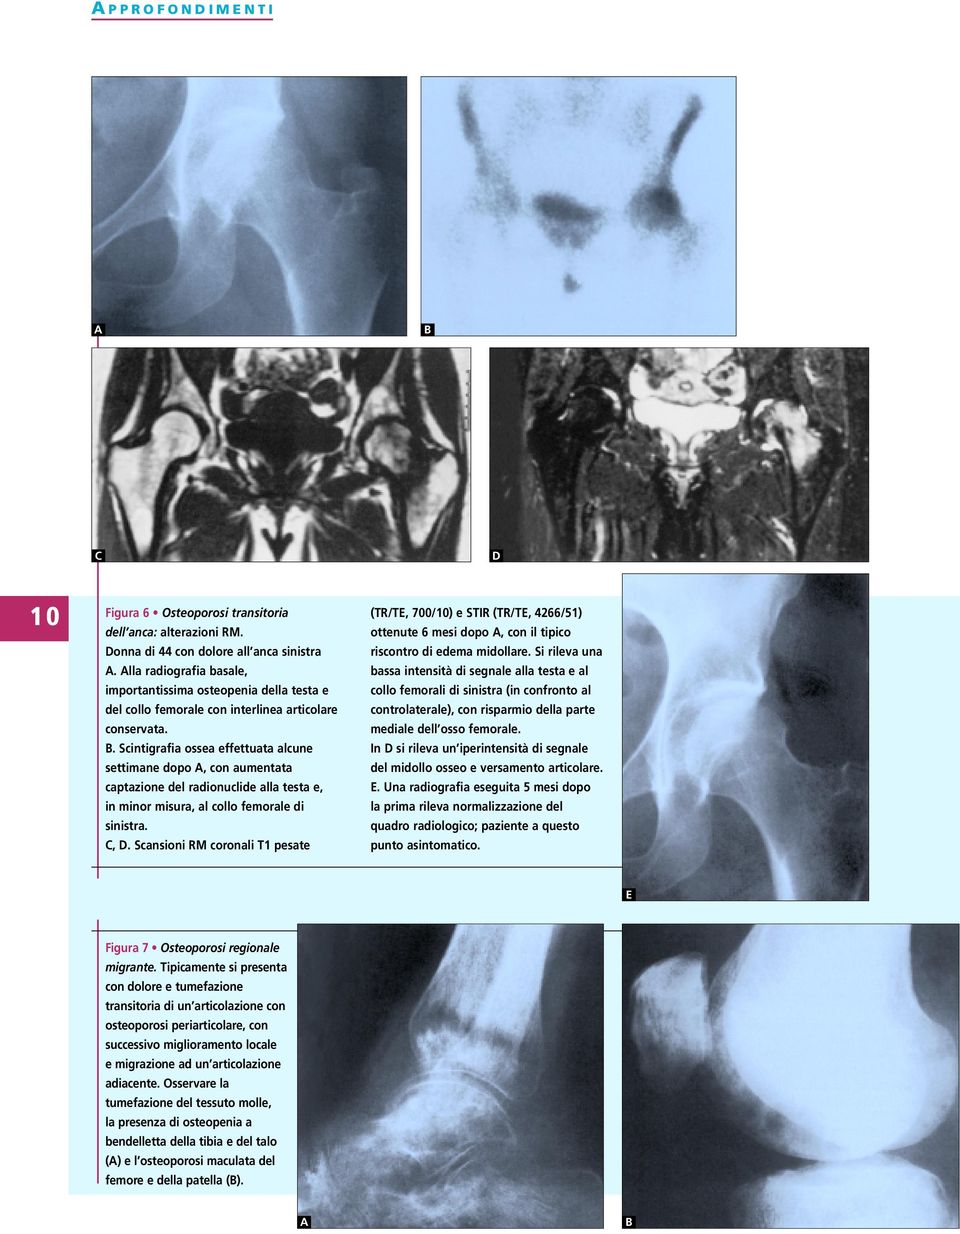 . Scintigrafia ossea effettuata alcune settimane dopo, con aumentata captazione del radionuclide alla testa e, in minor misura, al collo femorale di sinistra.,. Scansioni RM coronali T1 pesate (TR/TE, 700/10) e STIR (TR/TE, 4266/51) ottenute 6 mesi dopo, con il tipico riscontro di edema midollare.